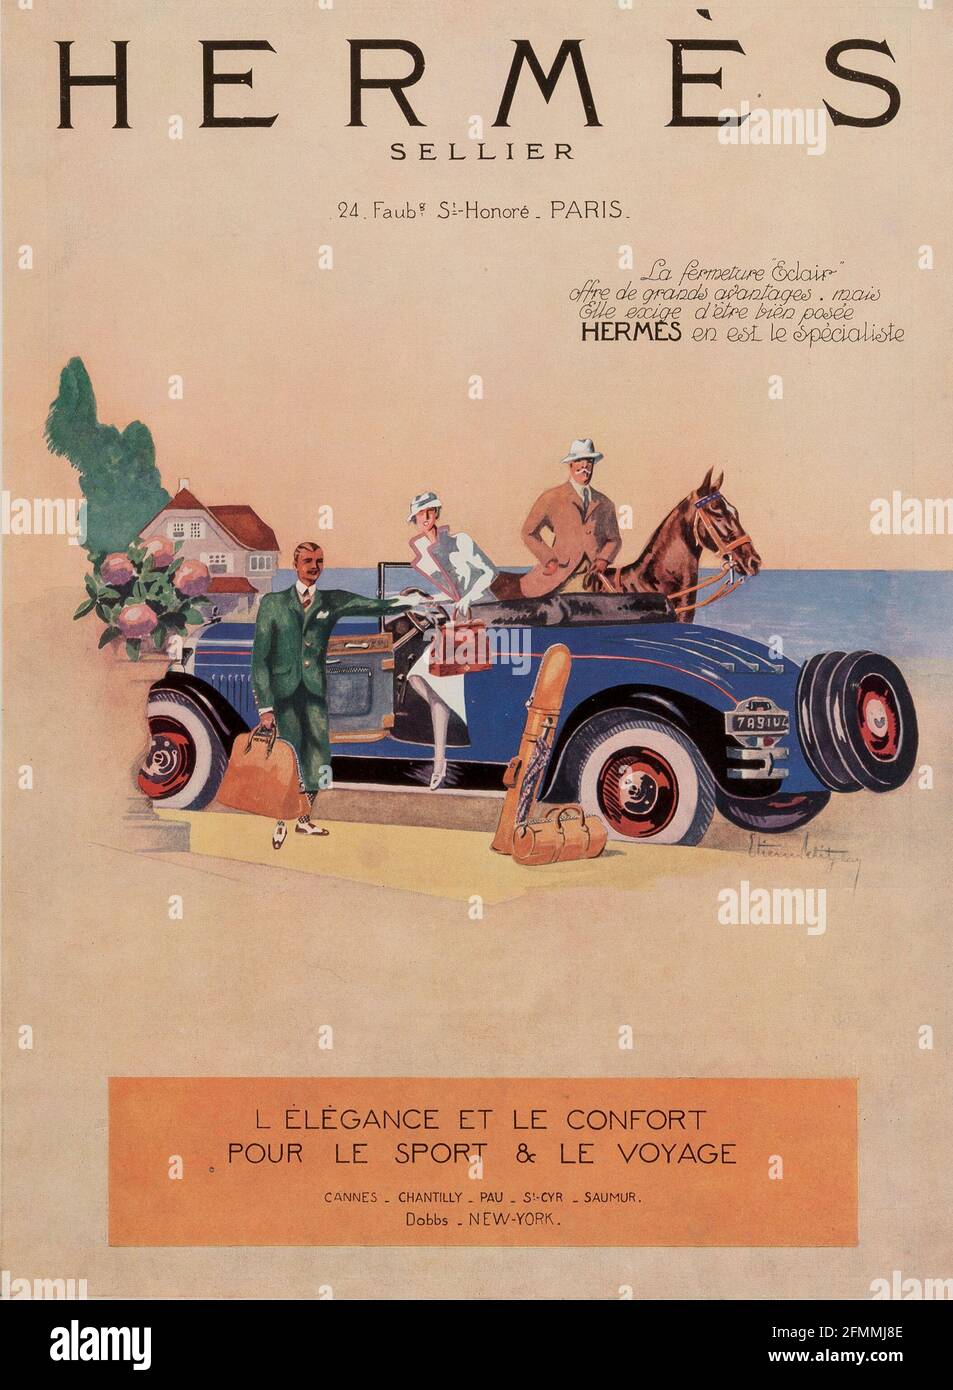 Hermès Sellier, publicidad de coches antiguos. Cartel antiguo. Foto de stock